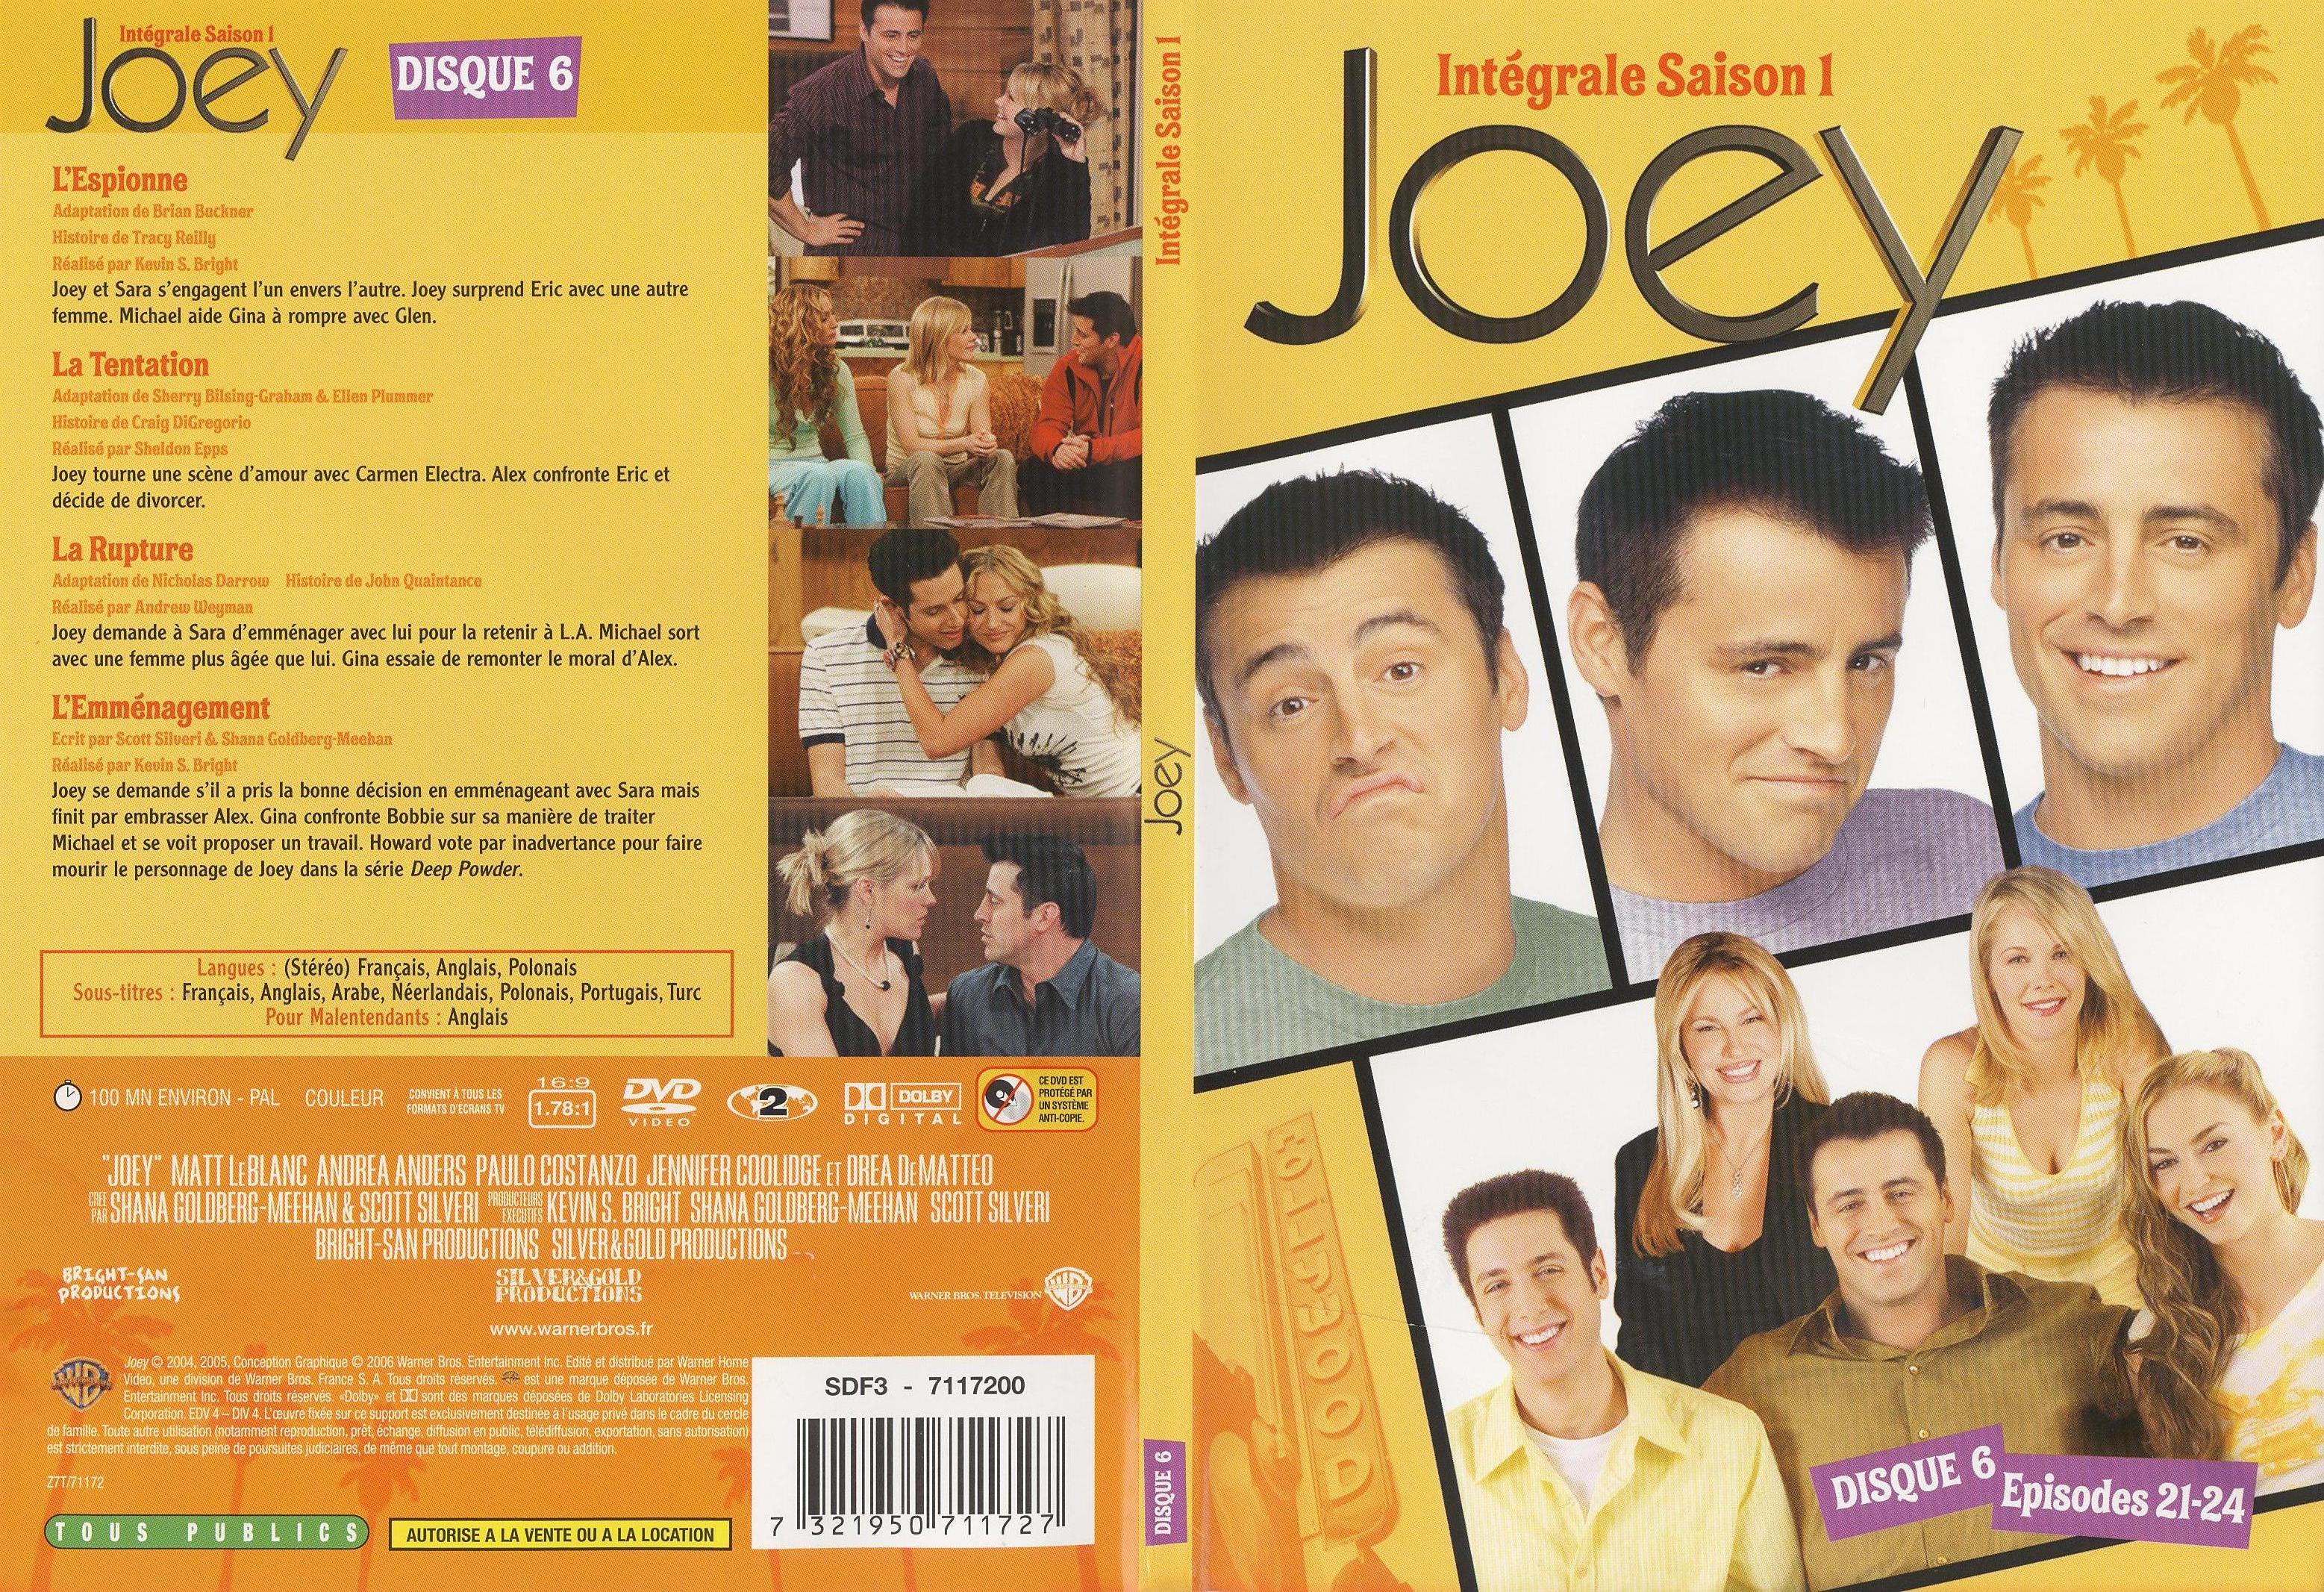 Jaquette DVD Joey Saison 1 DVD 6